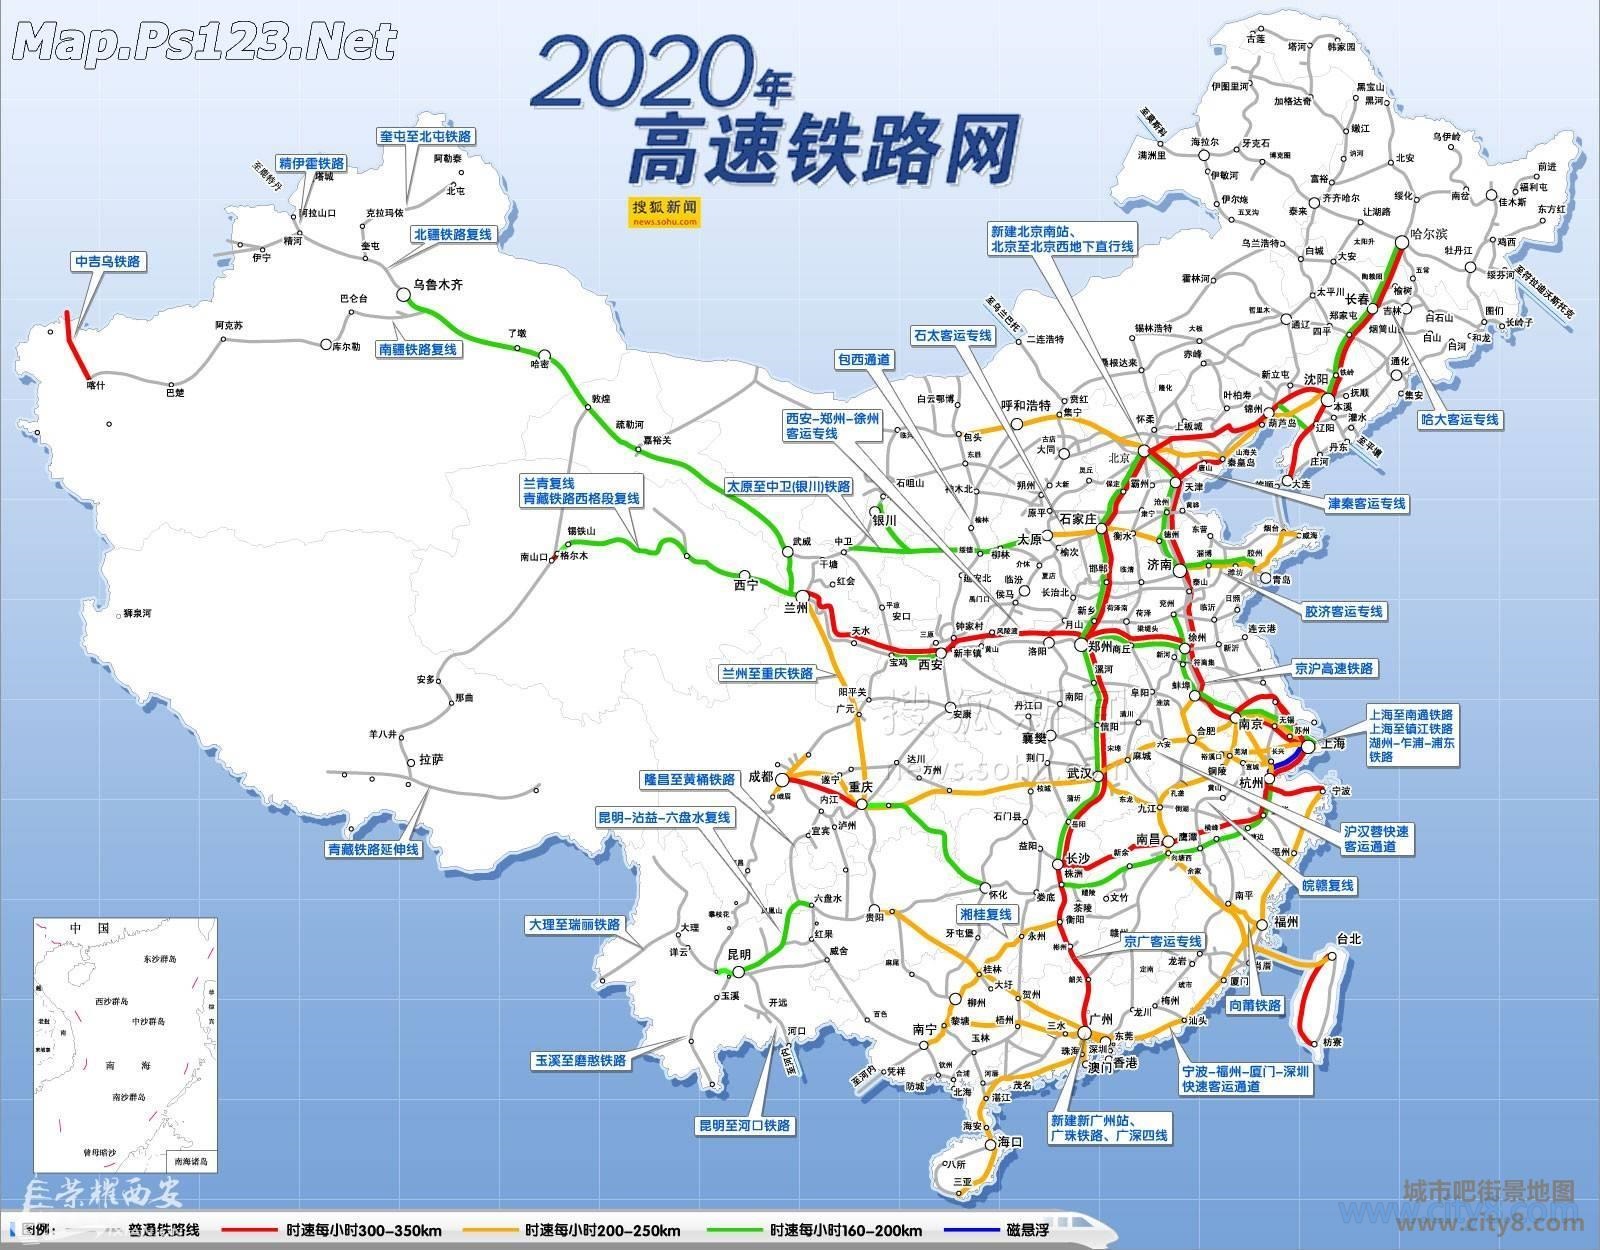 2020年中国高铁线路网